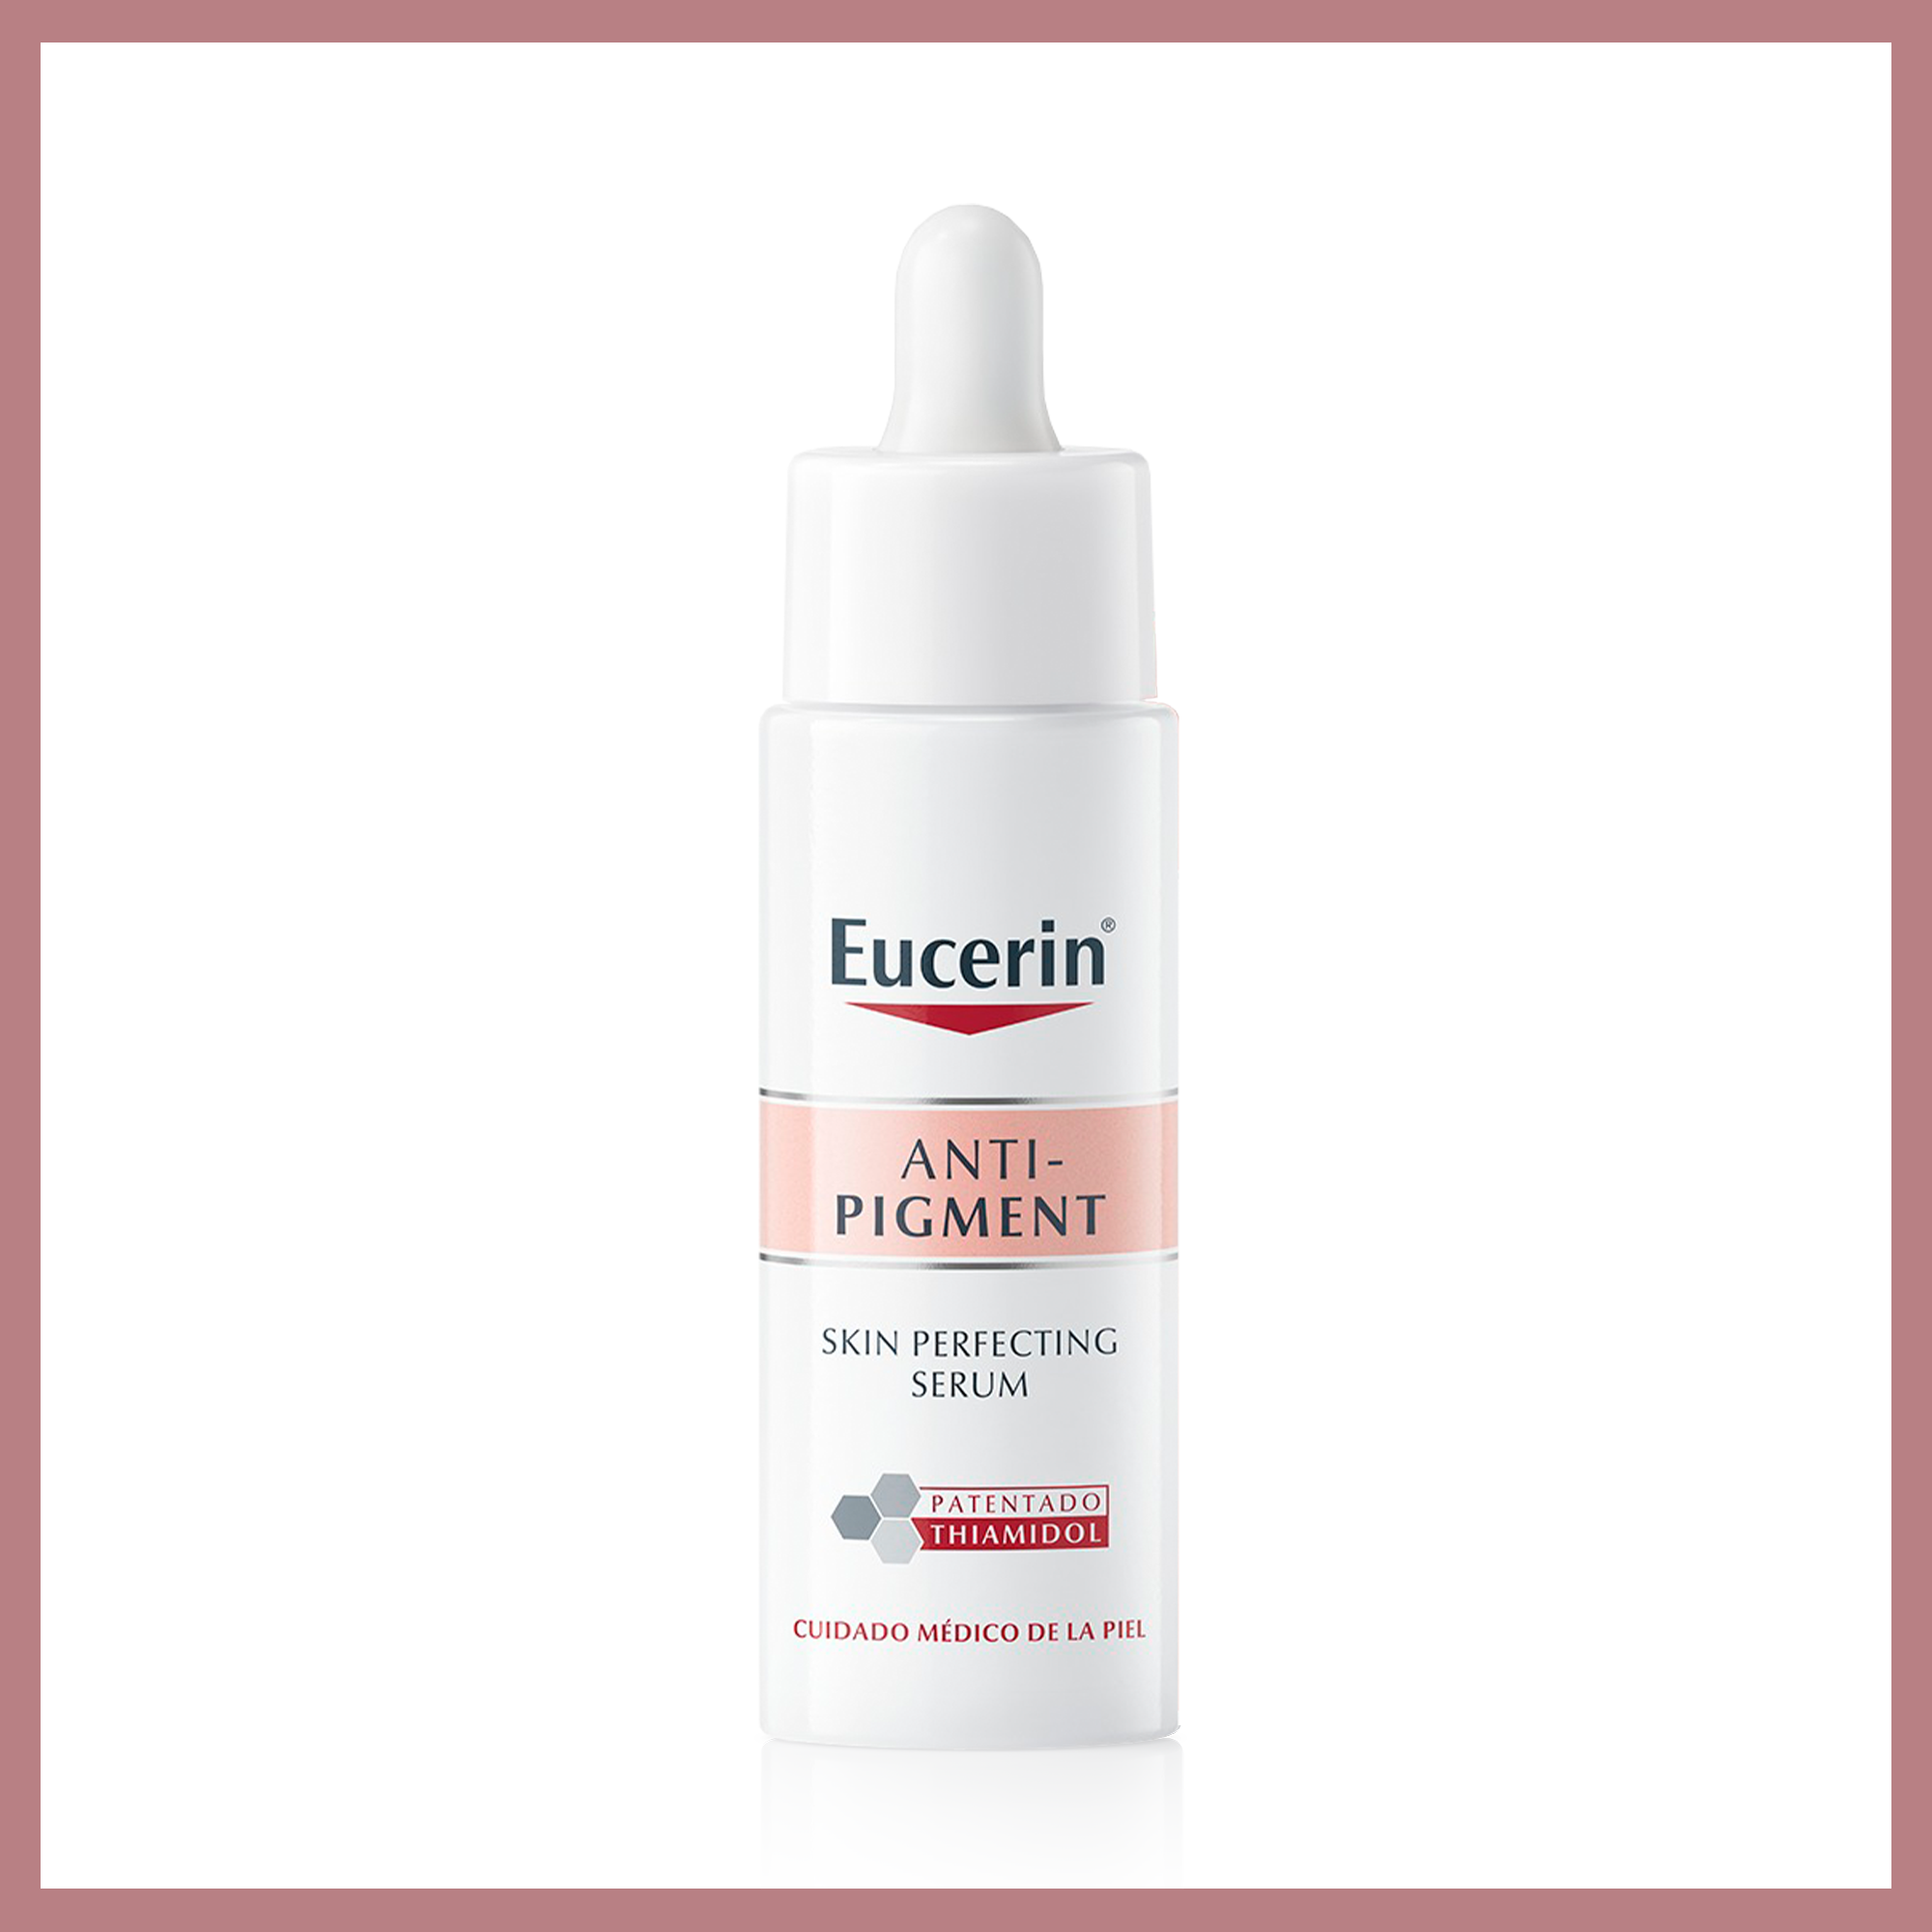 Eucerin Anti-Pigment Skin Perfecting Serum proporciona una piel más suave y elástica.